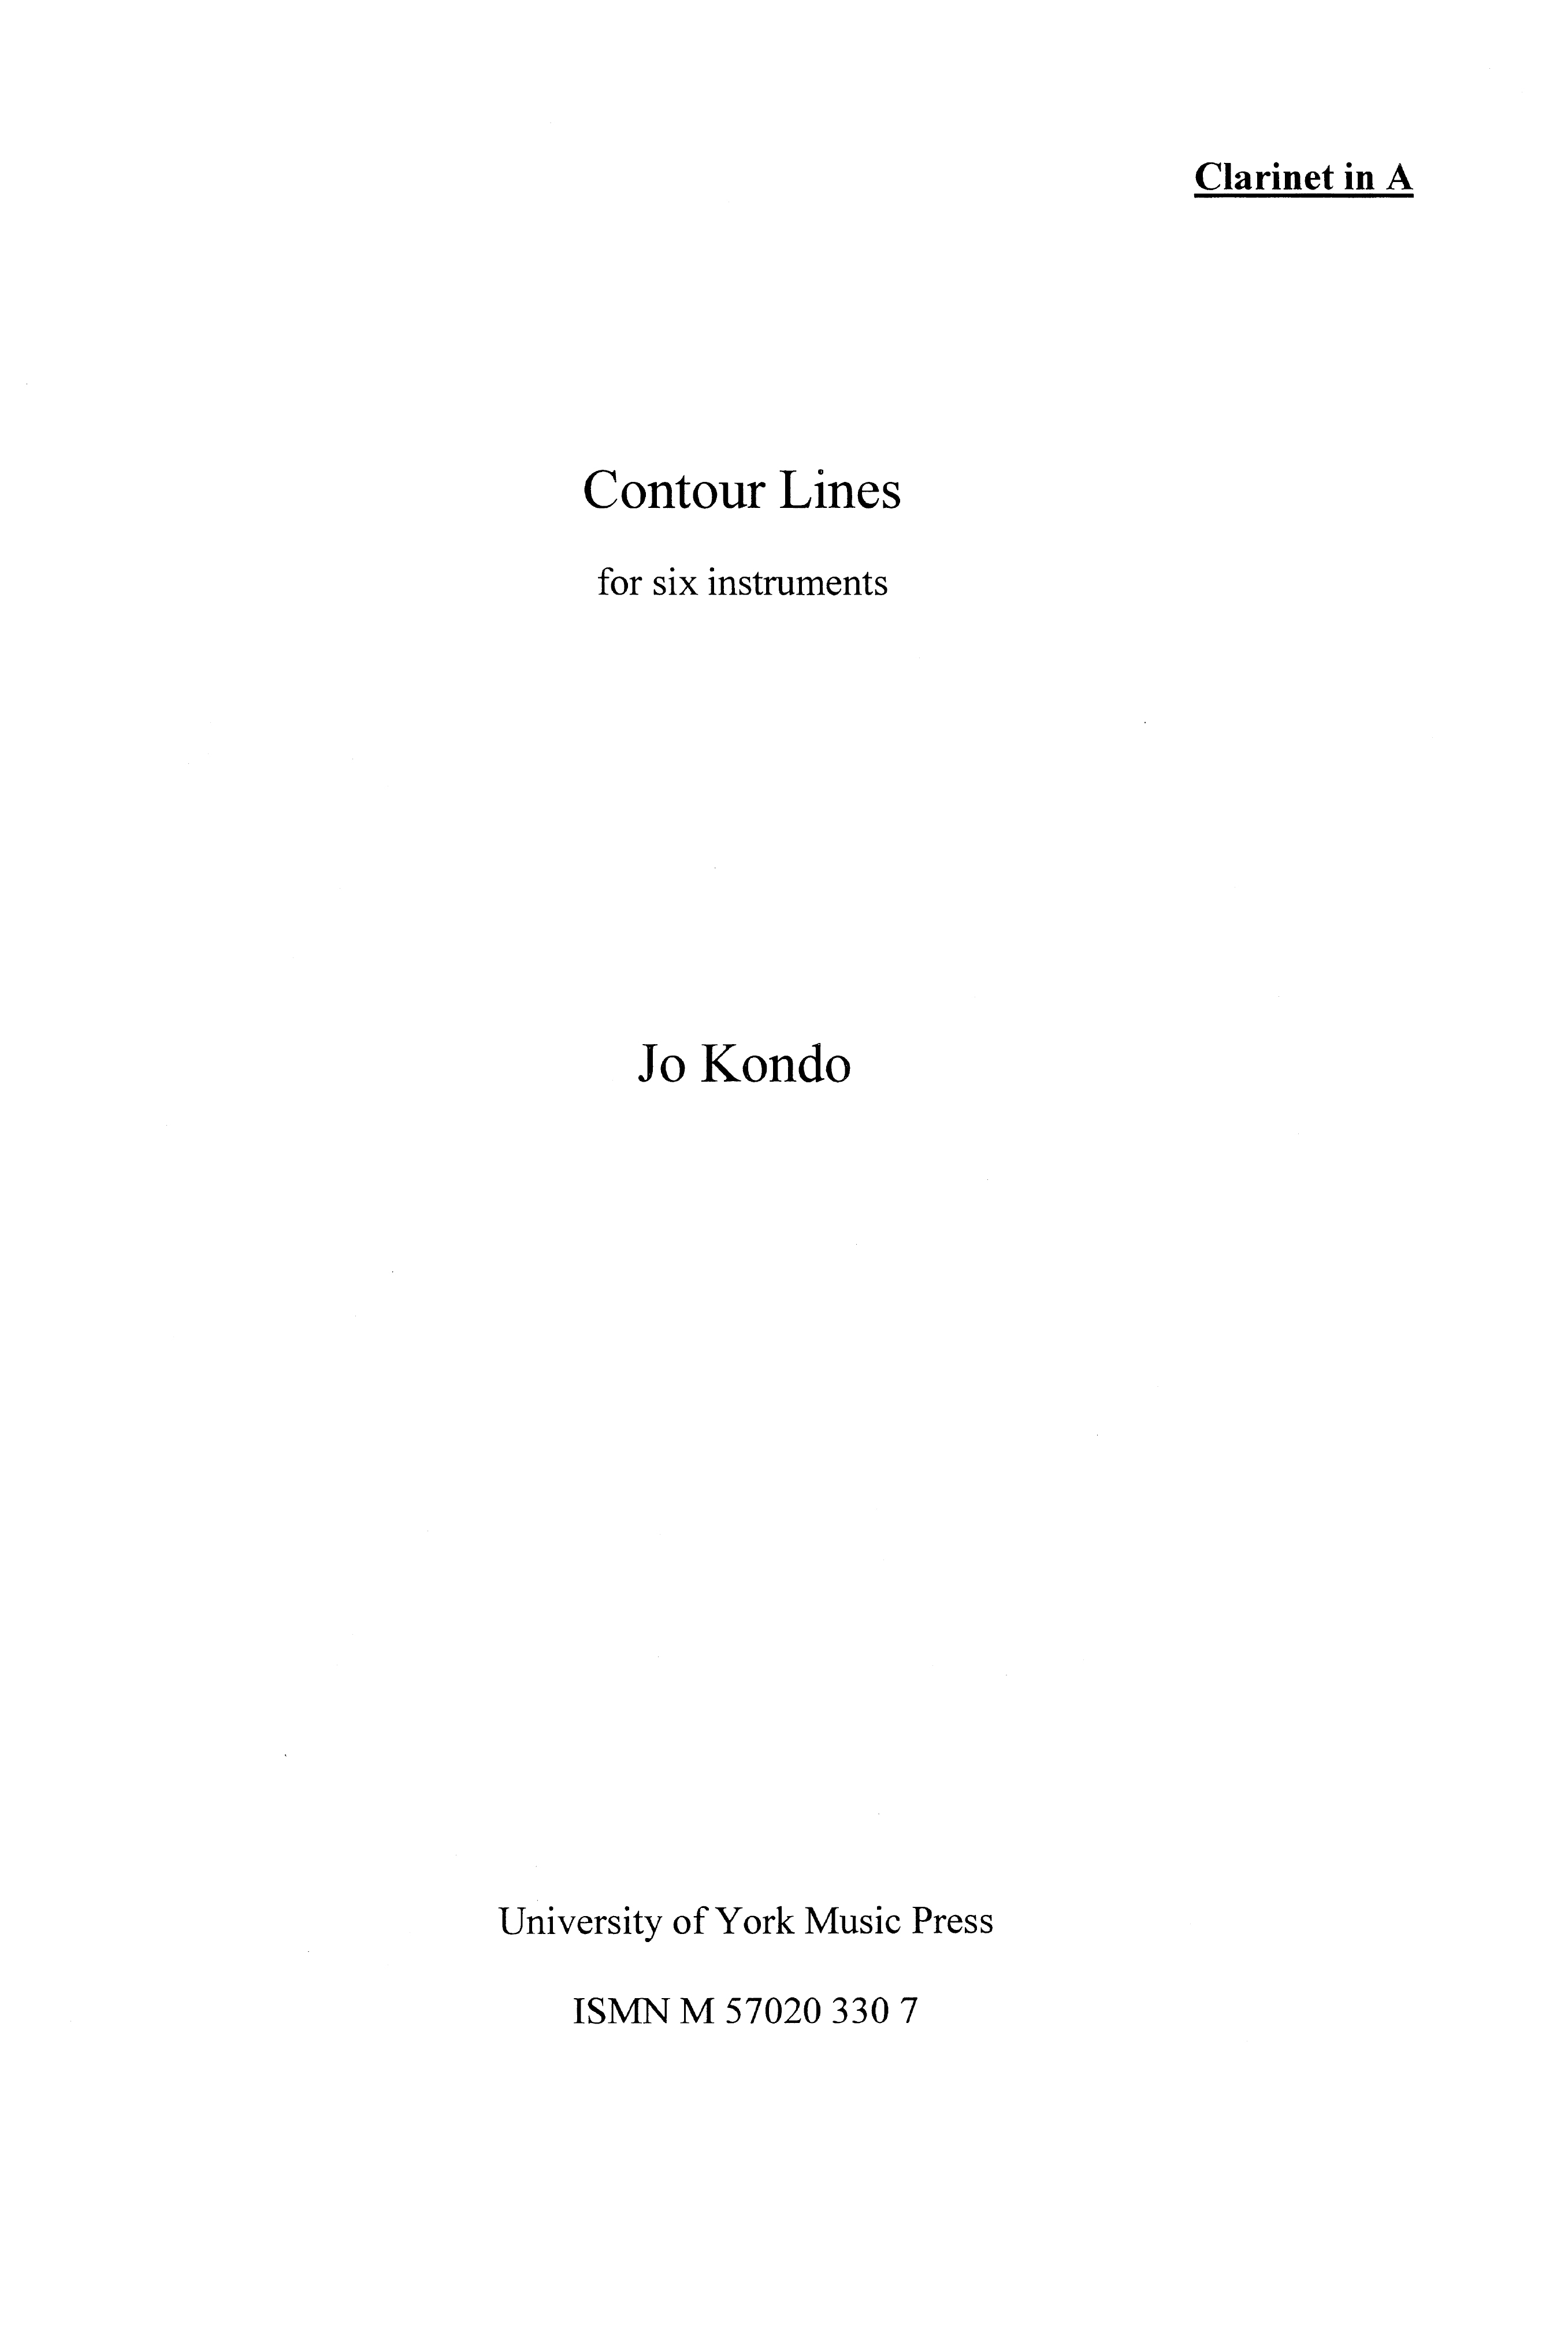 Jo Kondo: Contour Lines (Parts)